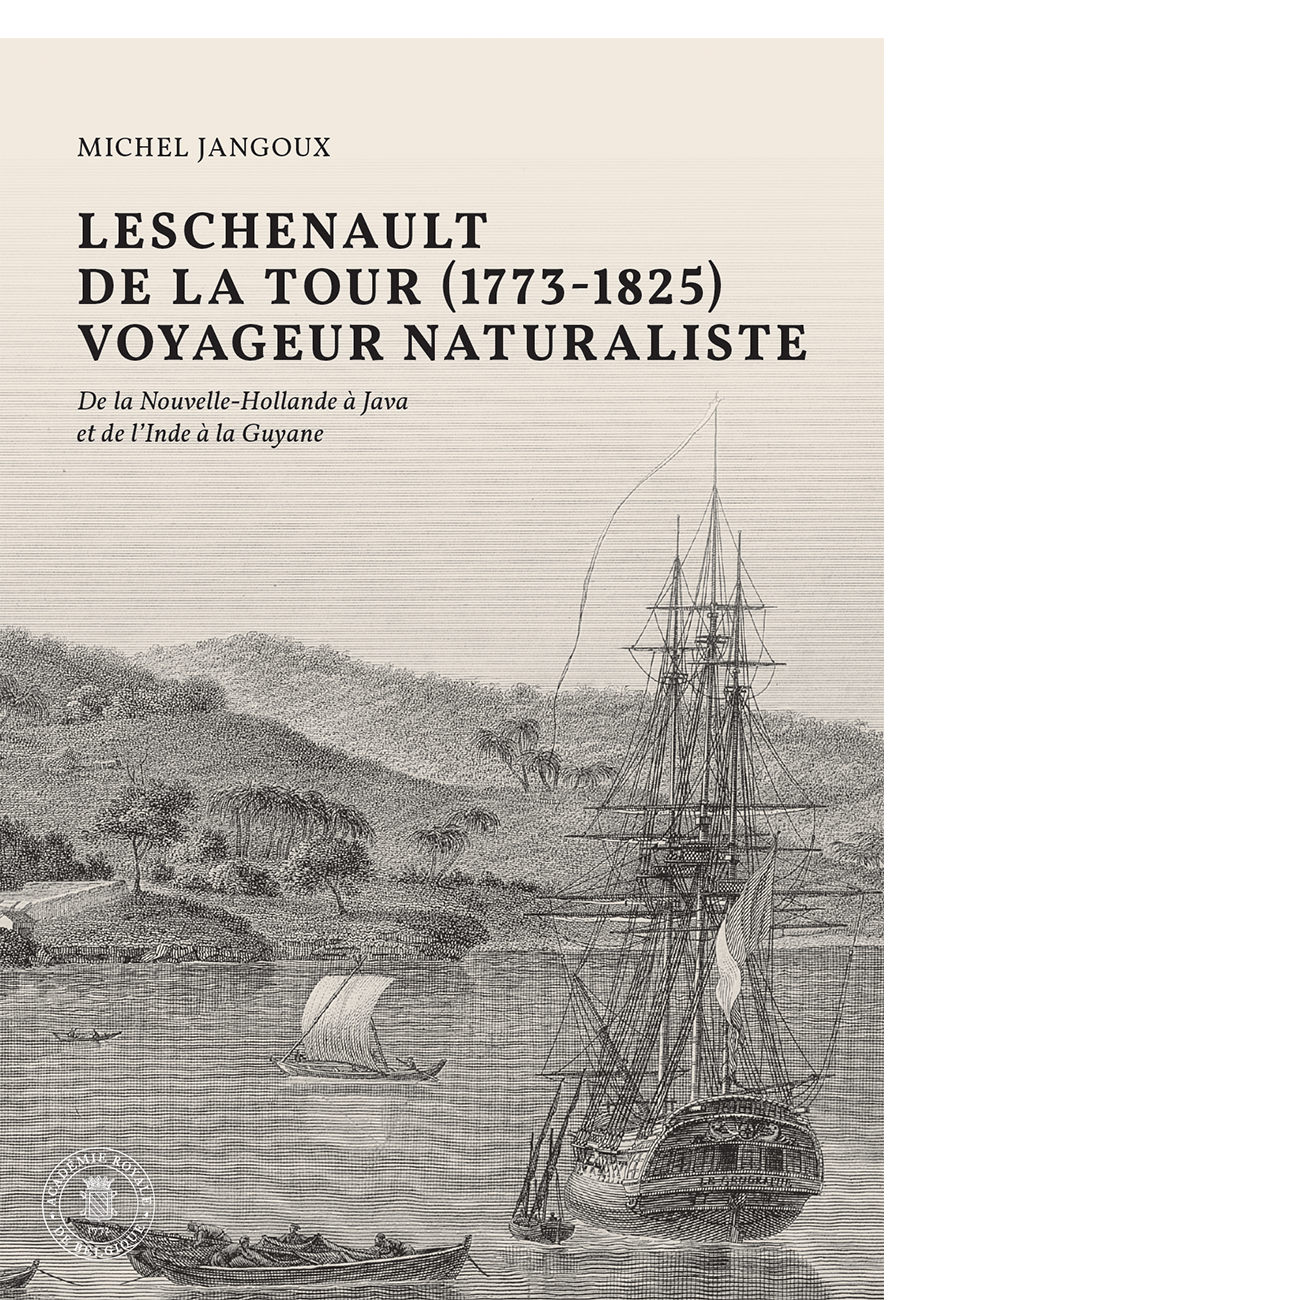 Leschenault de la Tour (1773-1825), voyageur naturaliste